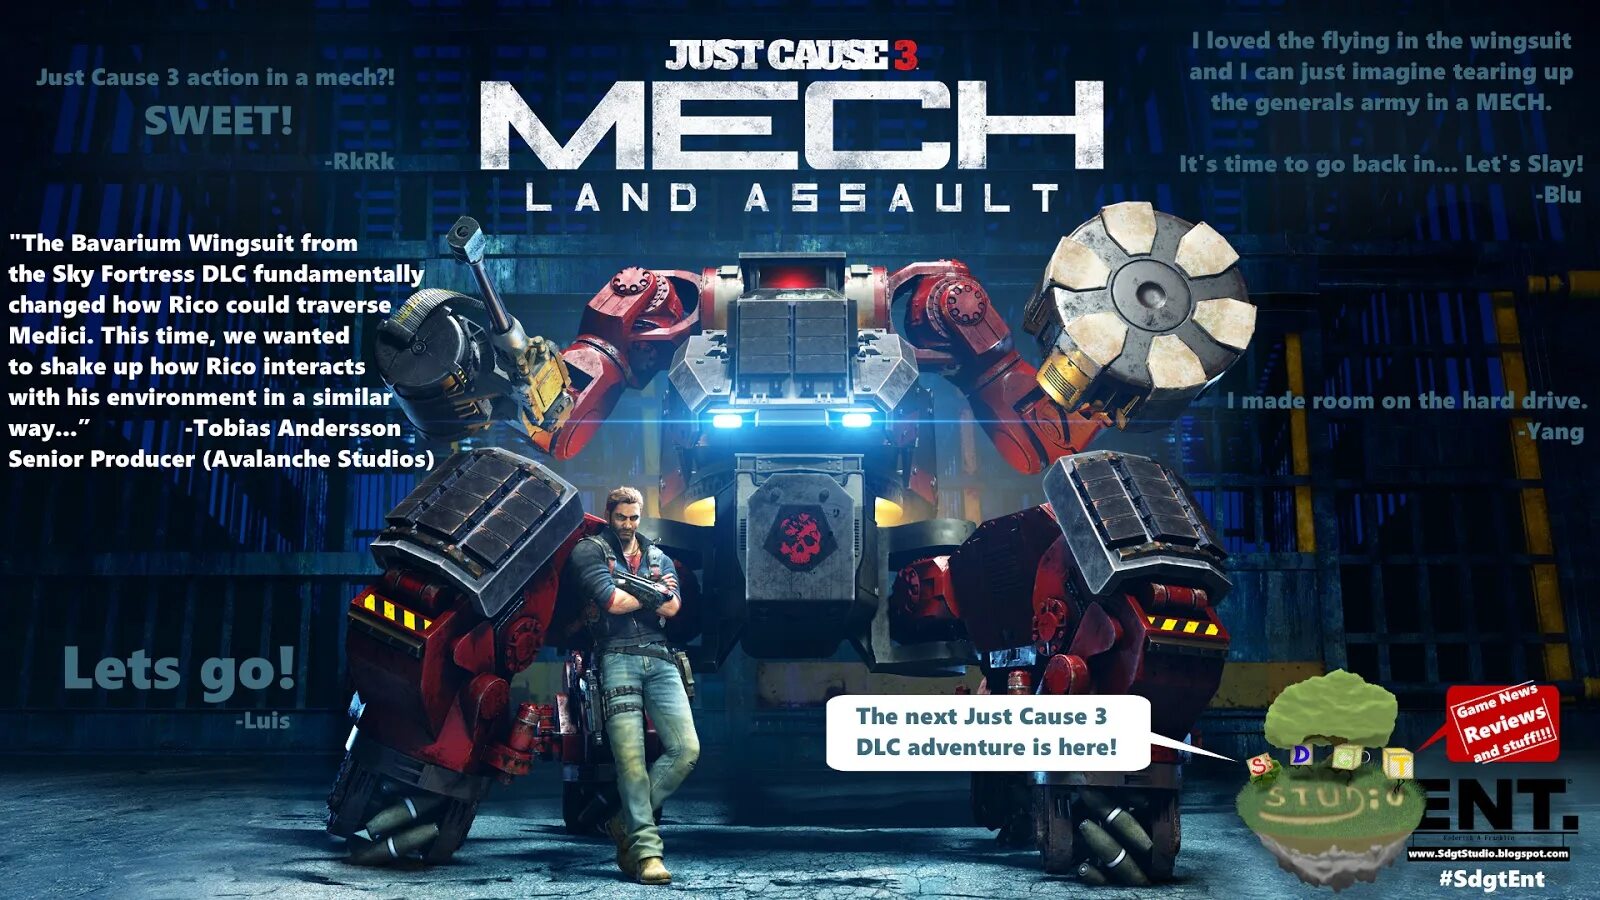 Ck3 длс. Just cause 3 DLC. Just cause 3 Mech. Just cause 3: Mech Land Assault. Закончите предложение их RG Mech Land Assault.